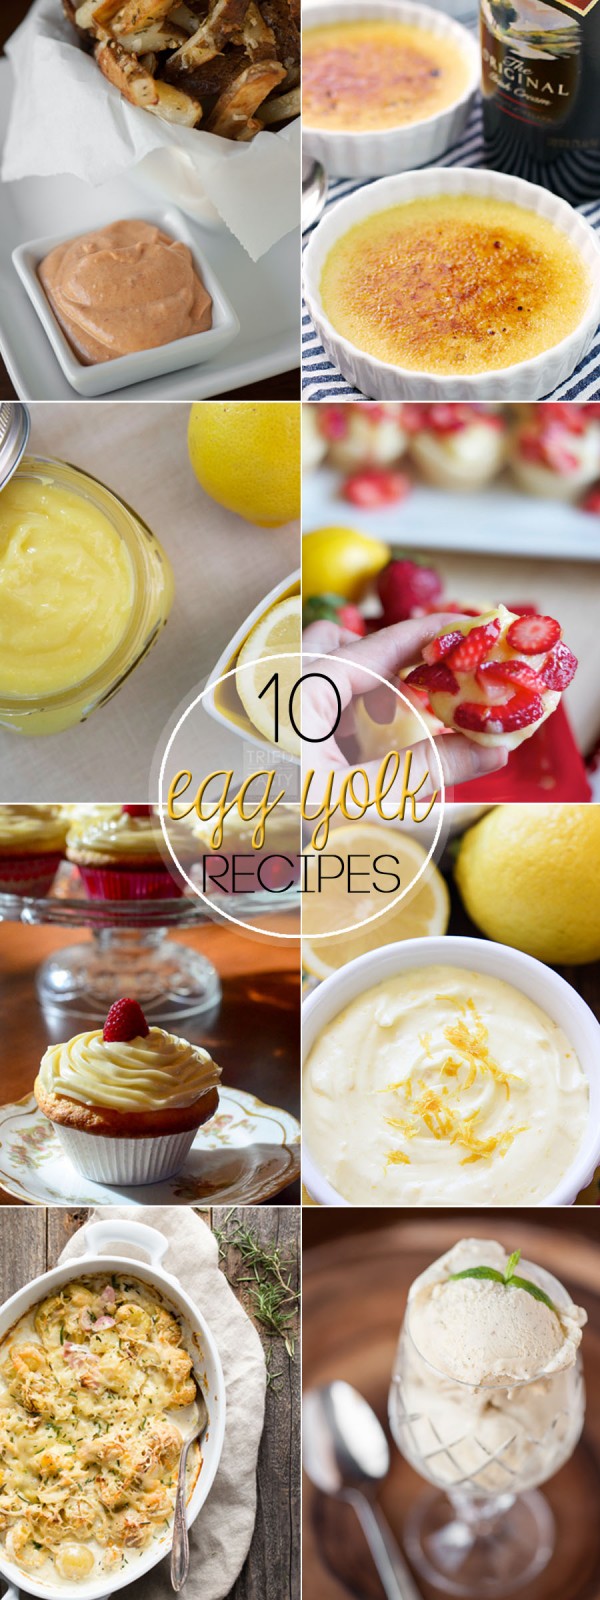 10 Egg Yolk Recipes Pinterest 600x1600 